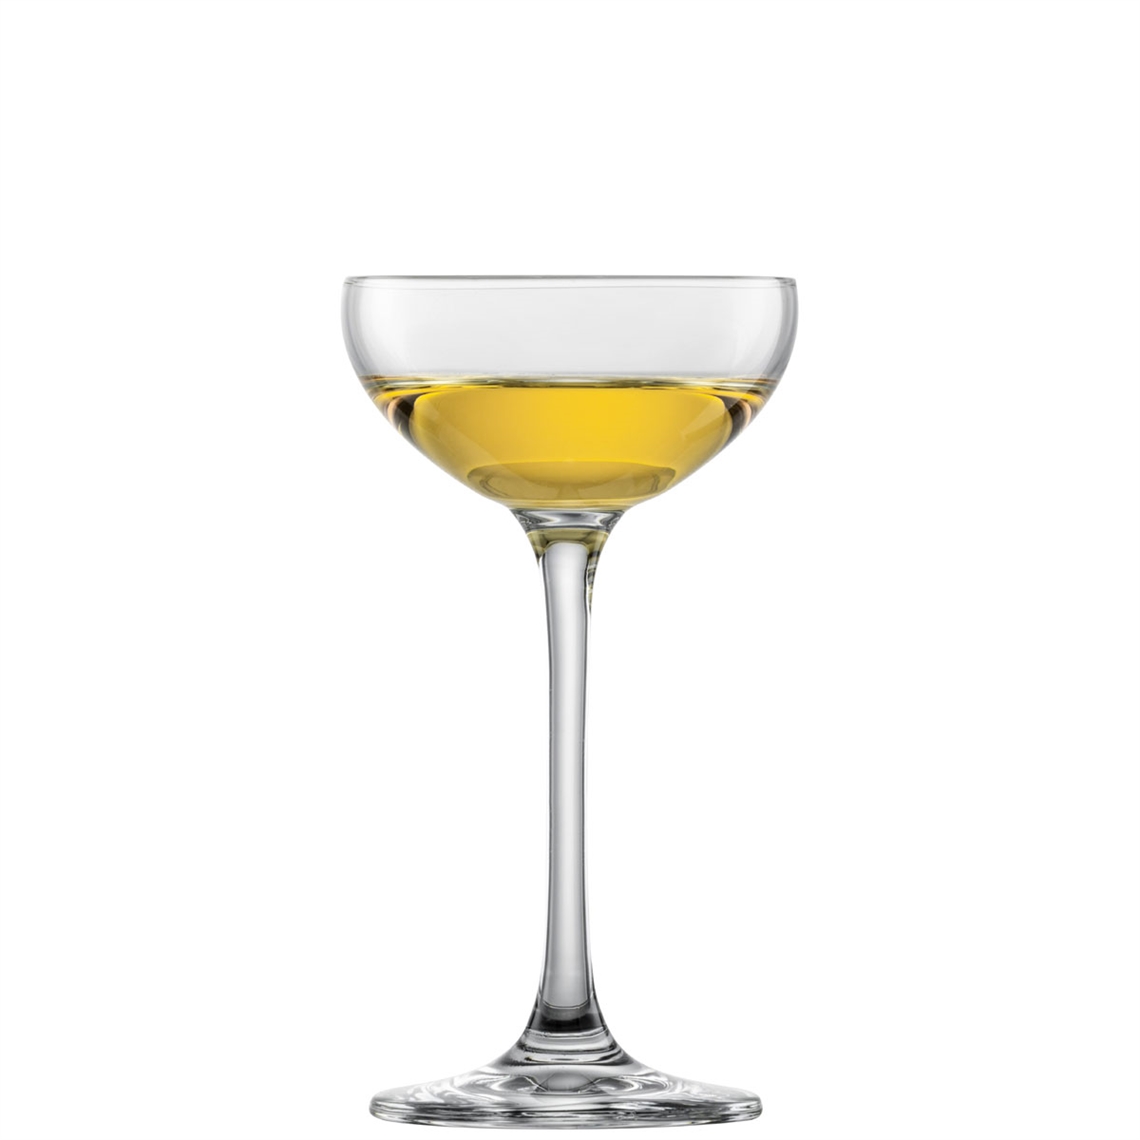 View more liqueur glasses from our Liqueur Glasses range